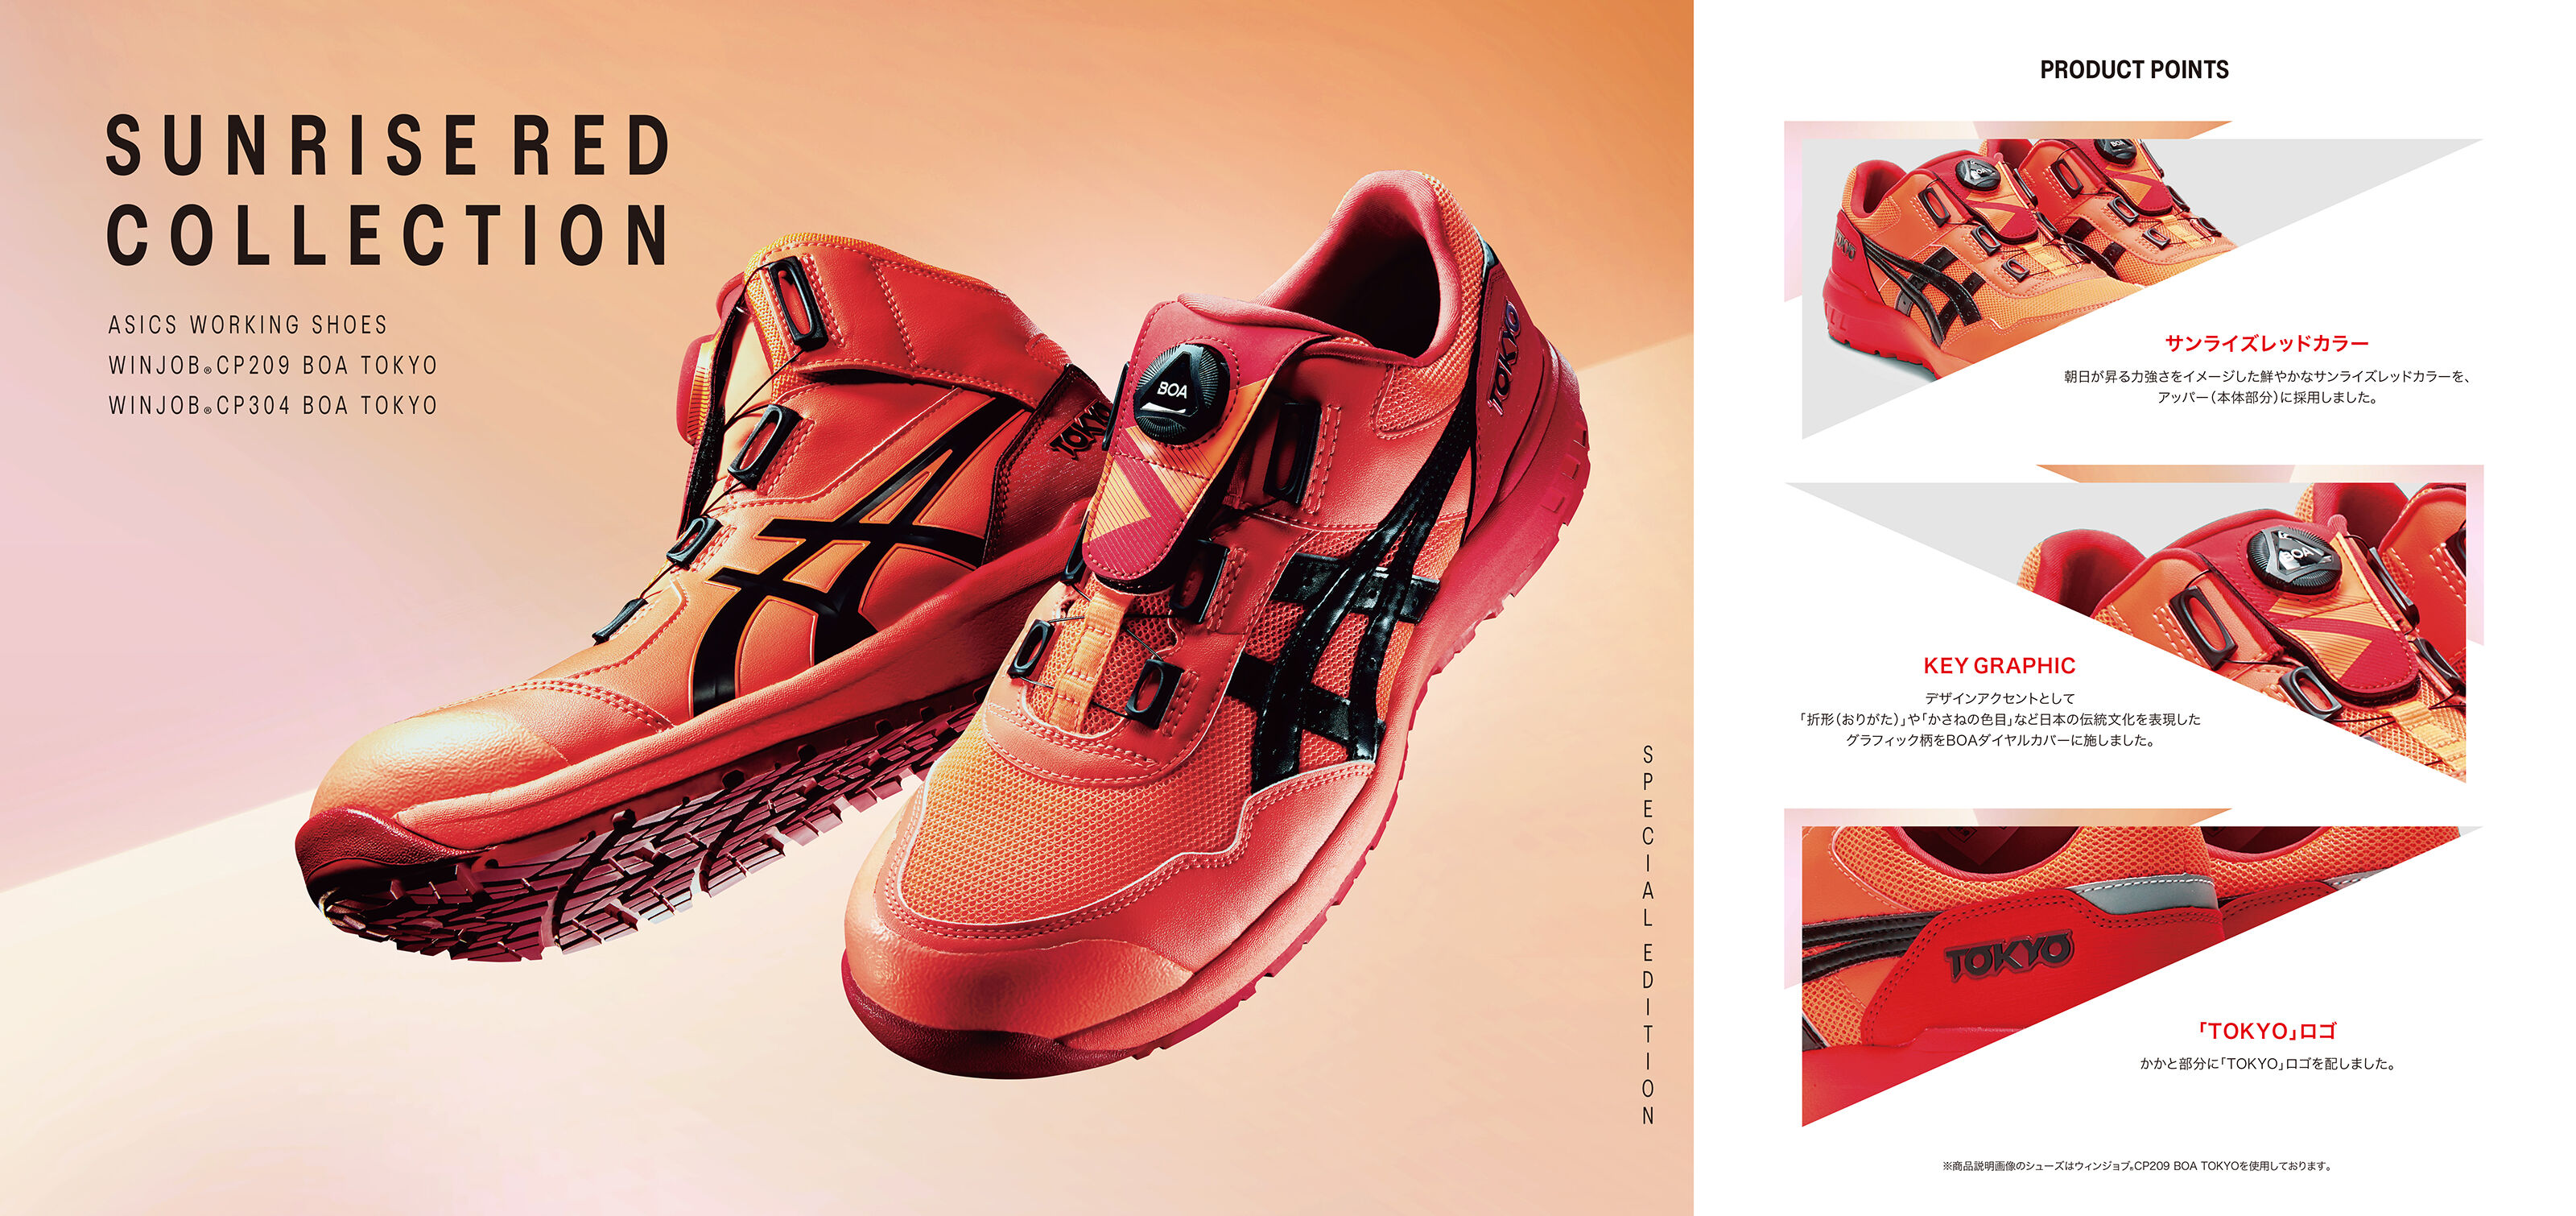 ウィンジョブ Cp304 Boa Tokyo サンライズレッド ブラック ワーキングシューズ 作業靴 Asics